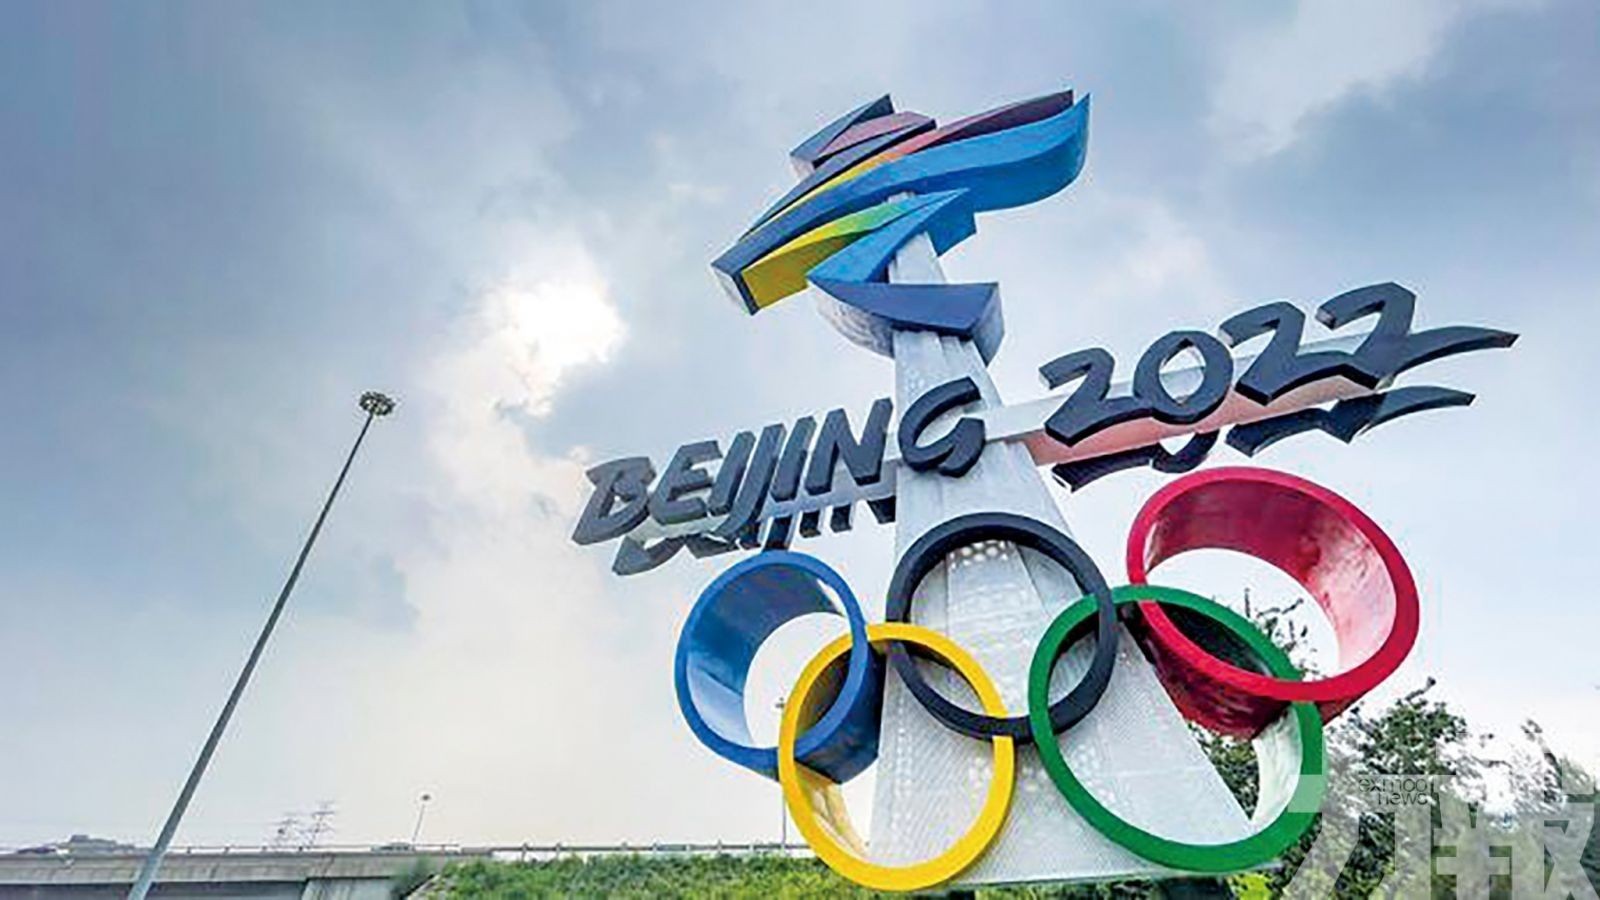 四名入境參與北京冬奧人員染疫